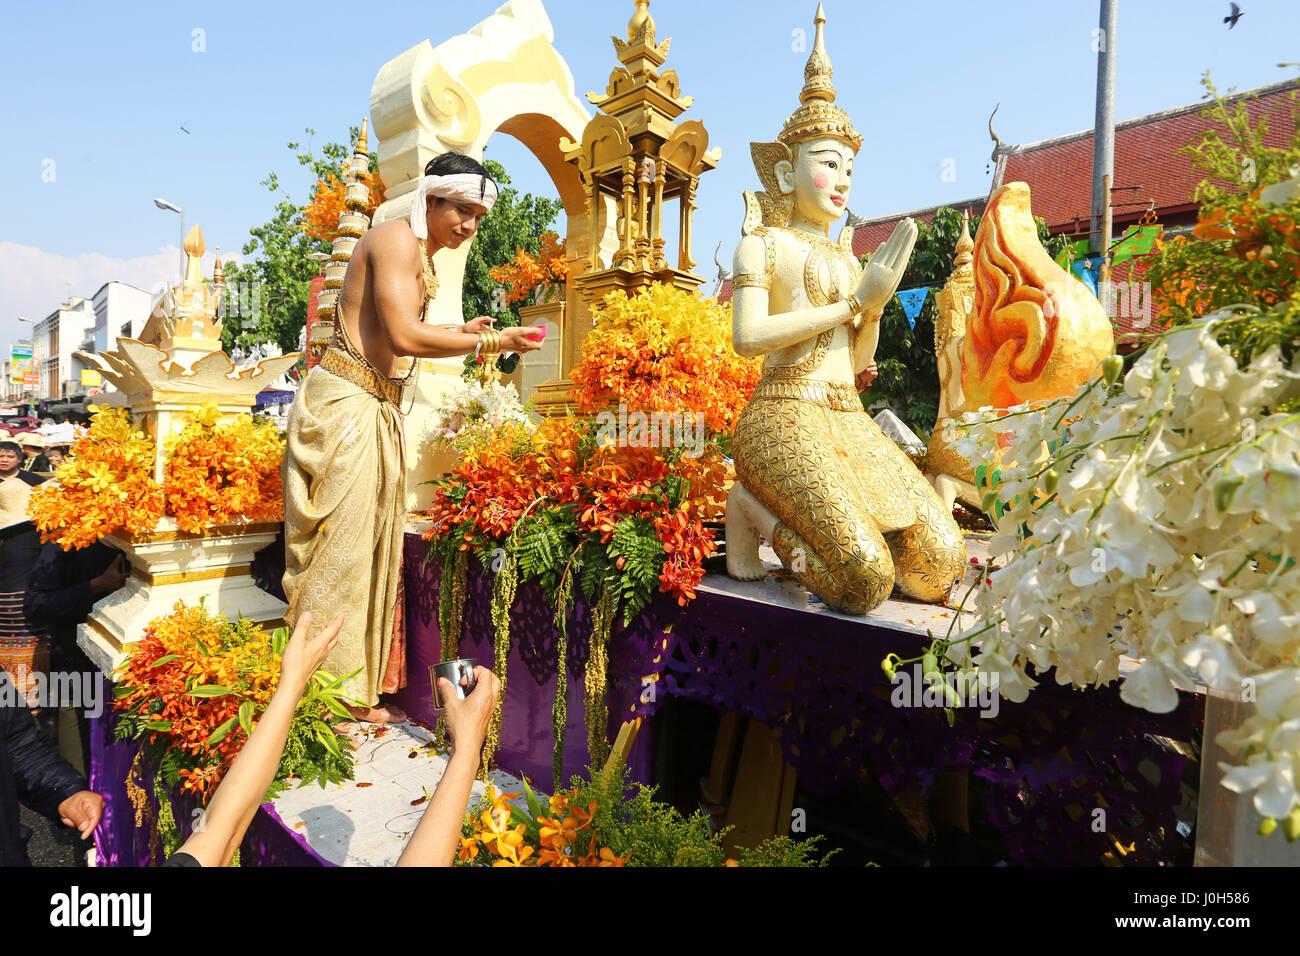 Chiang Mai, Thaïlande. 13 avril 2017. Les statues de Bouddha sont bénis avec de l'eau. Le premier jour de Songkran, le Nouvel An thaï, a commencé par une lutte d'eau massive dans la région de Chiang Mai, qui durera trois jours. La tradition vient de verser une petite quantité d'eau sur une statue de Bouddha, ou les moines, de recevoir une bénédiction en retour. Maintenant les bénédictions coulent librement et plutôt que d'une petite pincée de l'eau, peut être administré par flexible, seau de même super soaker les pistolets à eau. Crédit : Paul Brown/Alamy Live News Banque D'Images